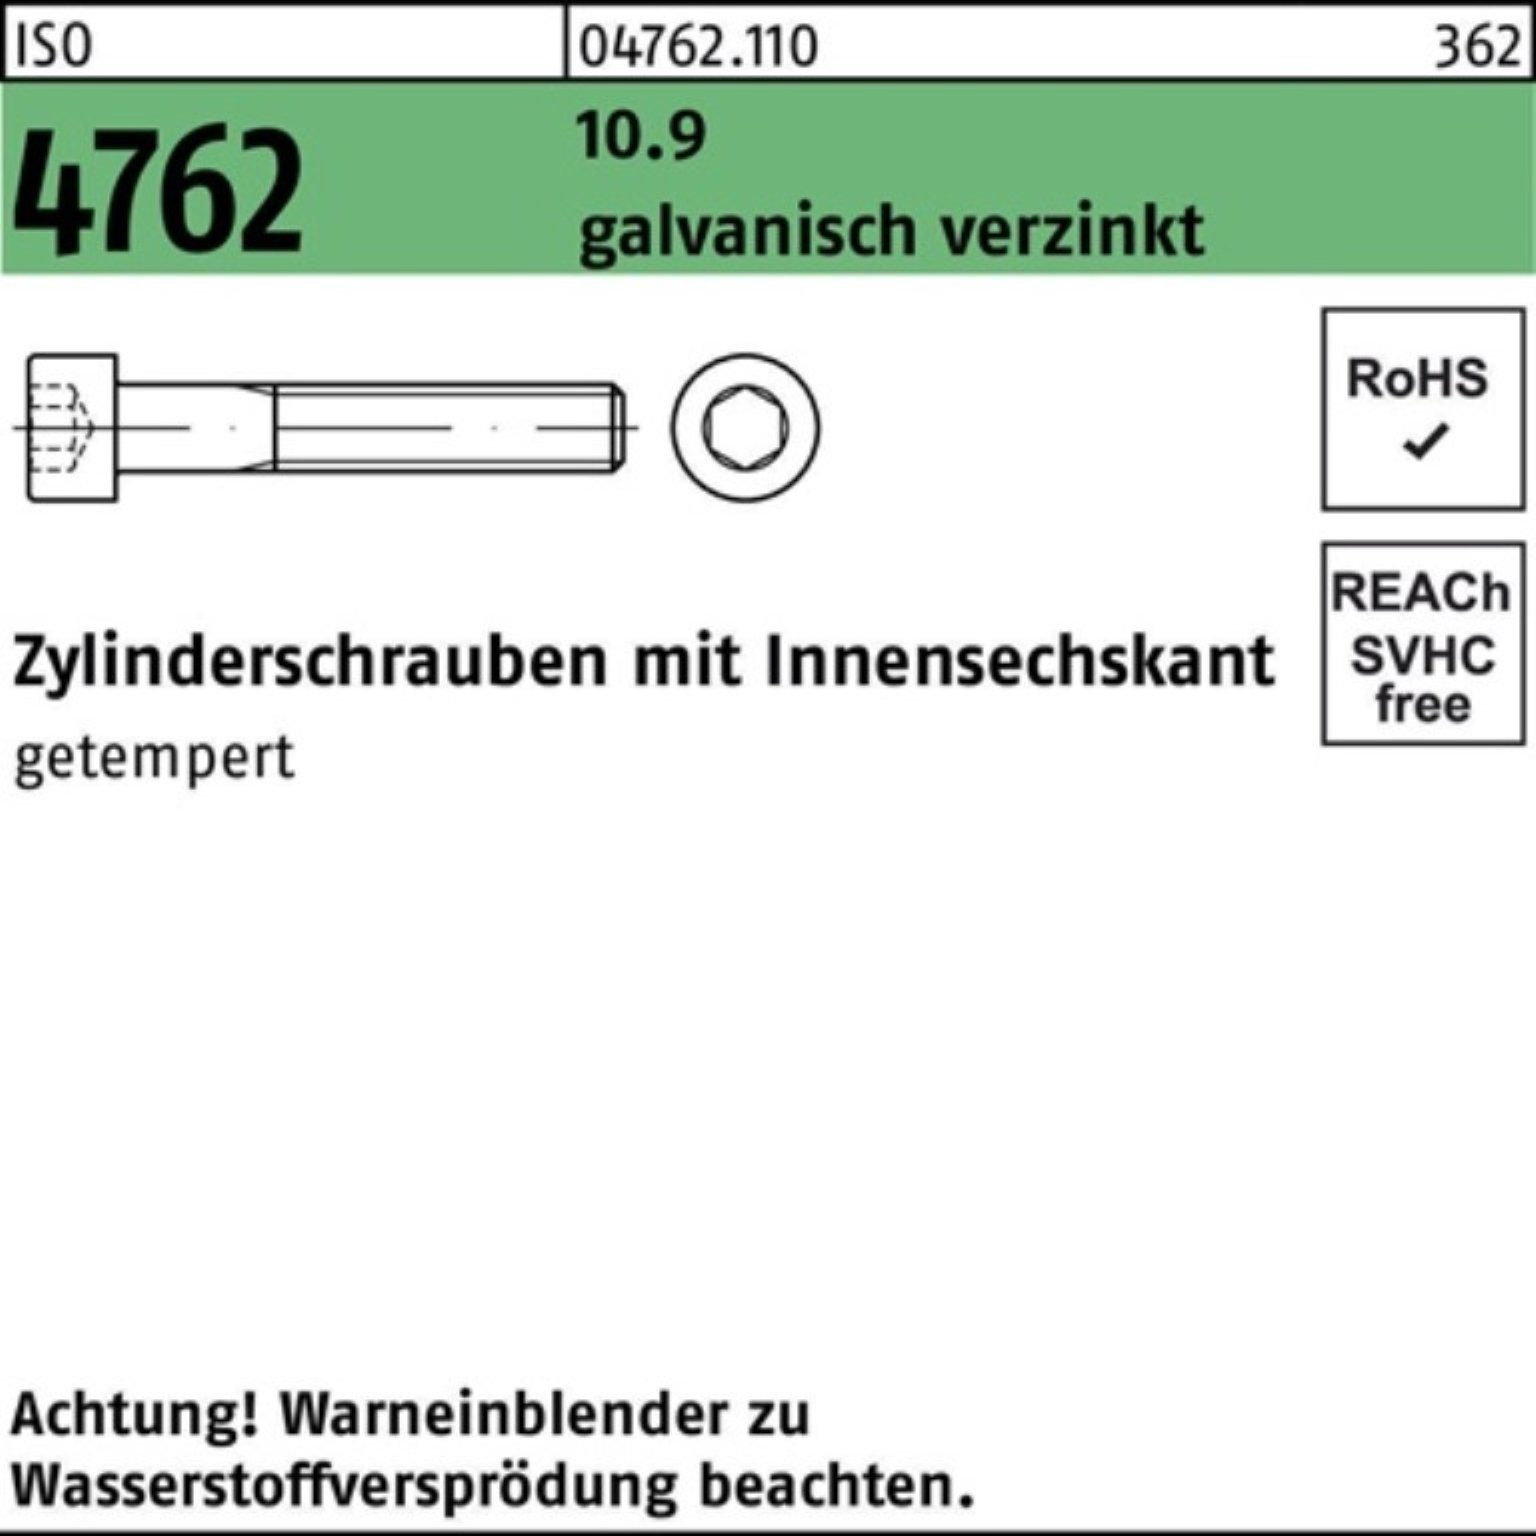 Reyher Zylinderschraube Innen-6kt 10.9 galv.verz. 100er Pack 4762 M20x210 ISO Zylinderschraube